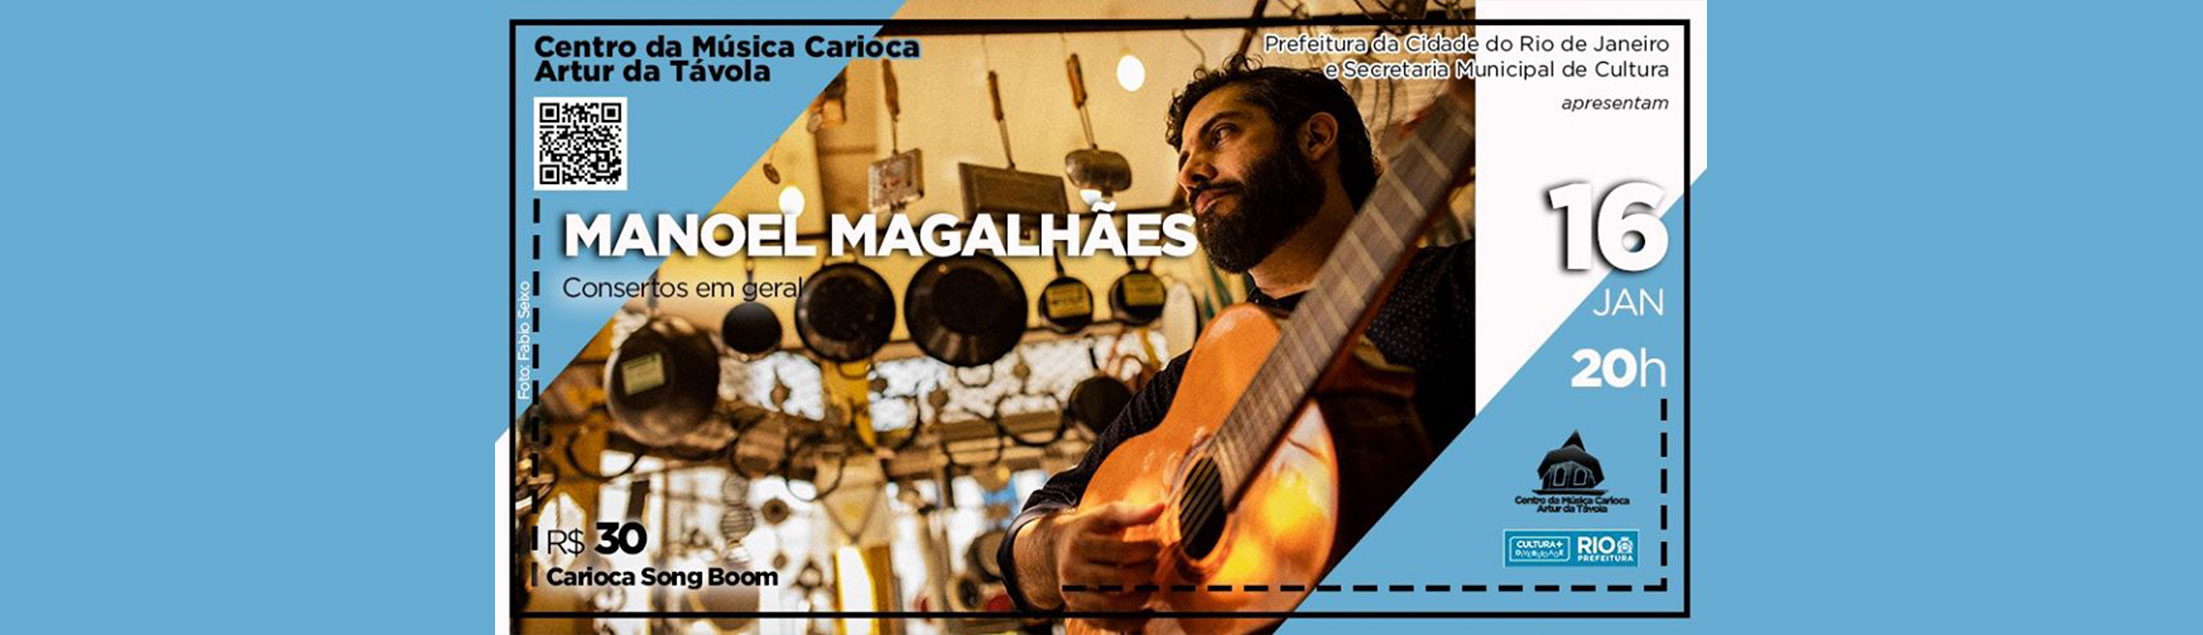 Manoel Magalhães no show 'Consertos em Geral'